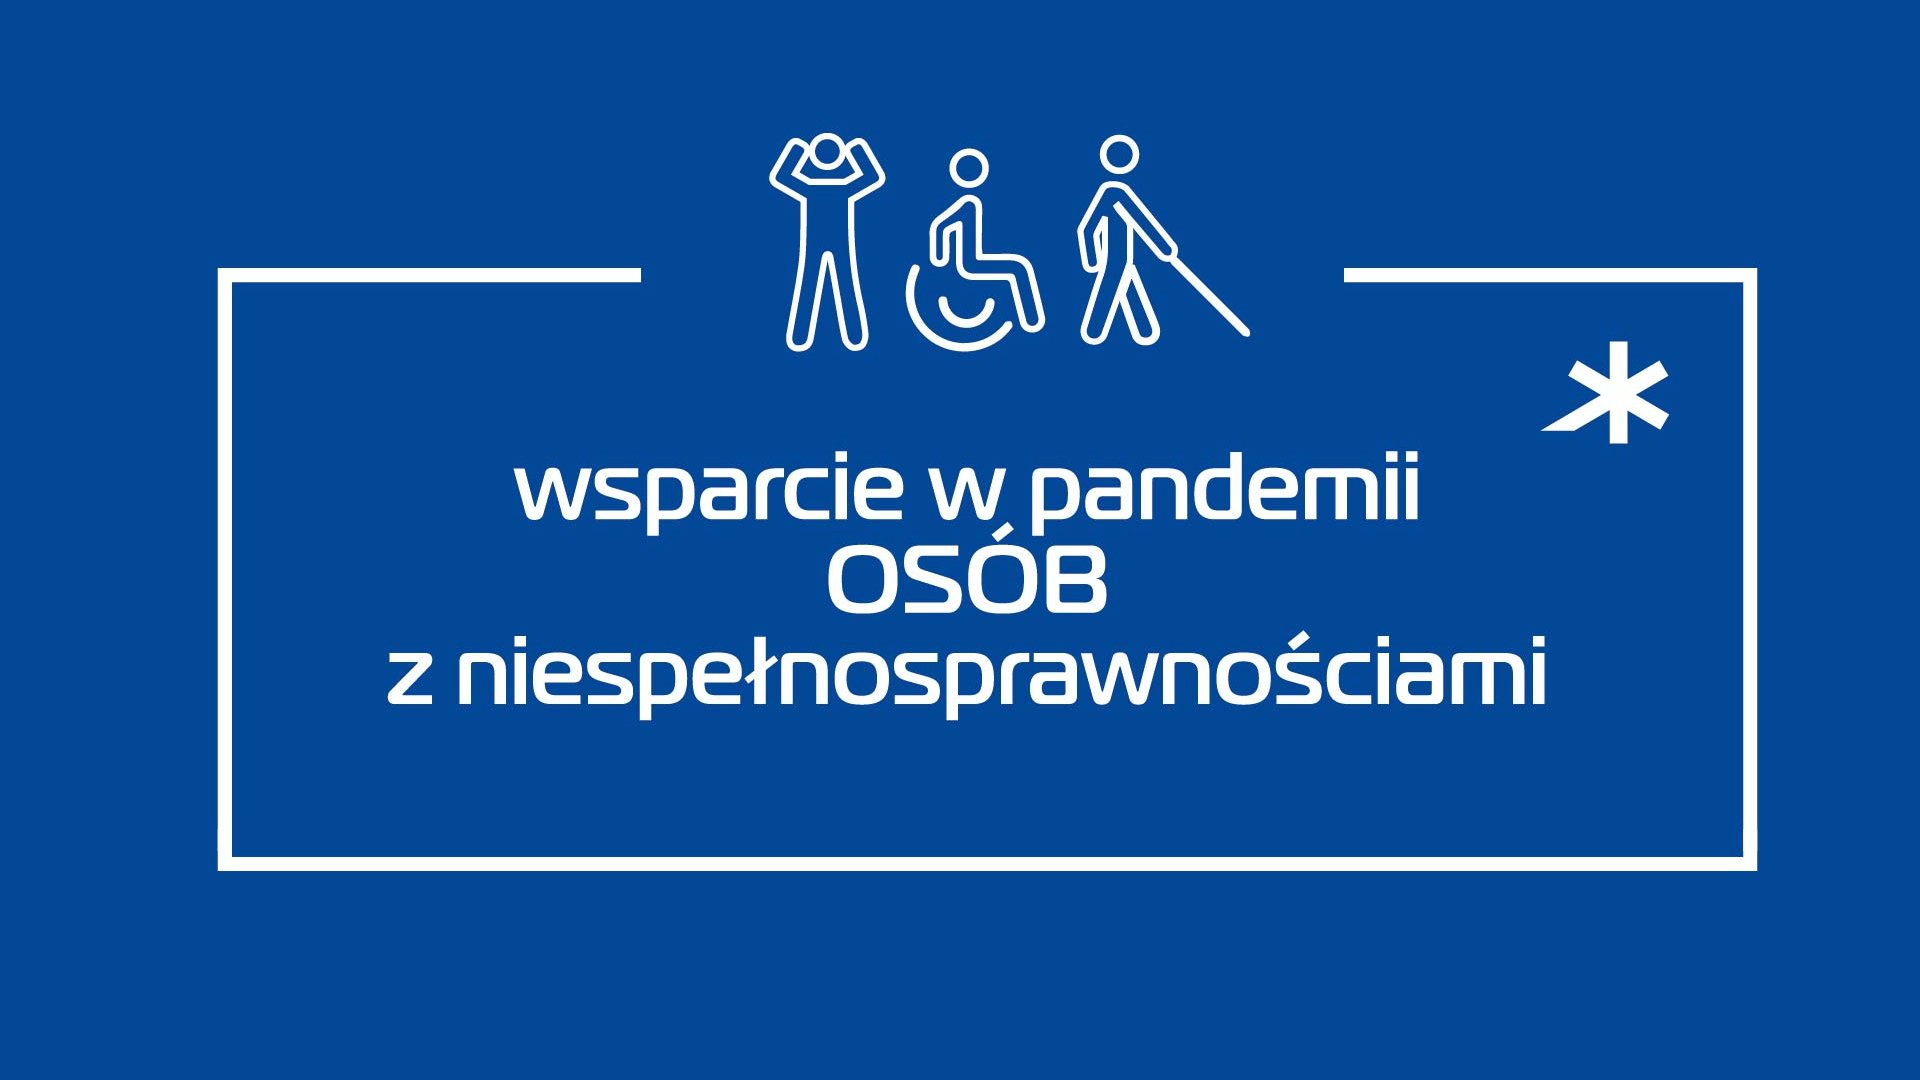 Grafika: na granatowym tle napis: "wsparcie w pandemii osób z niepełnosprawnościami", nad nim schematyczne sylwetki ludzkie - grafika artykułu